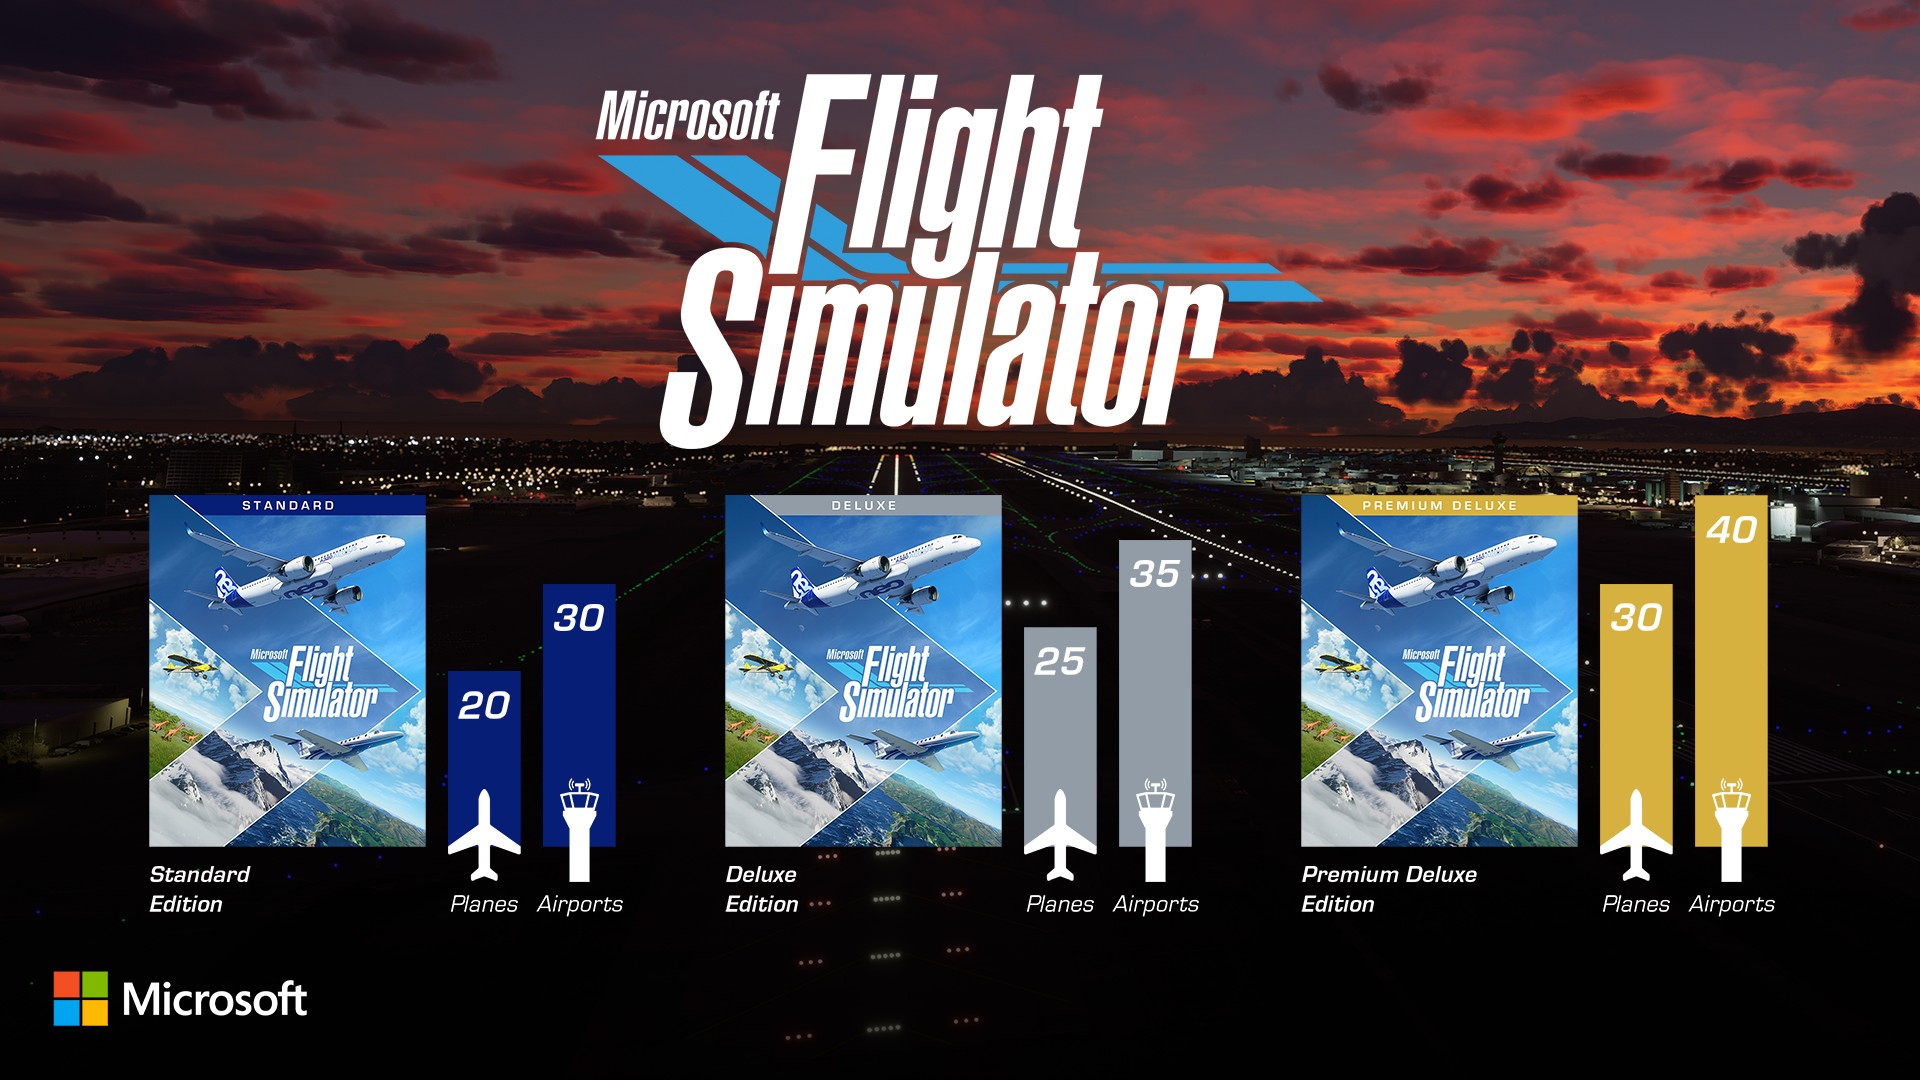 Estas son las tres ediciones de Microsoft Flight Simulator con sus diferentes contenidos 40